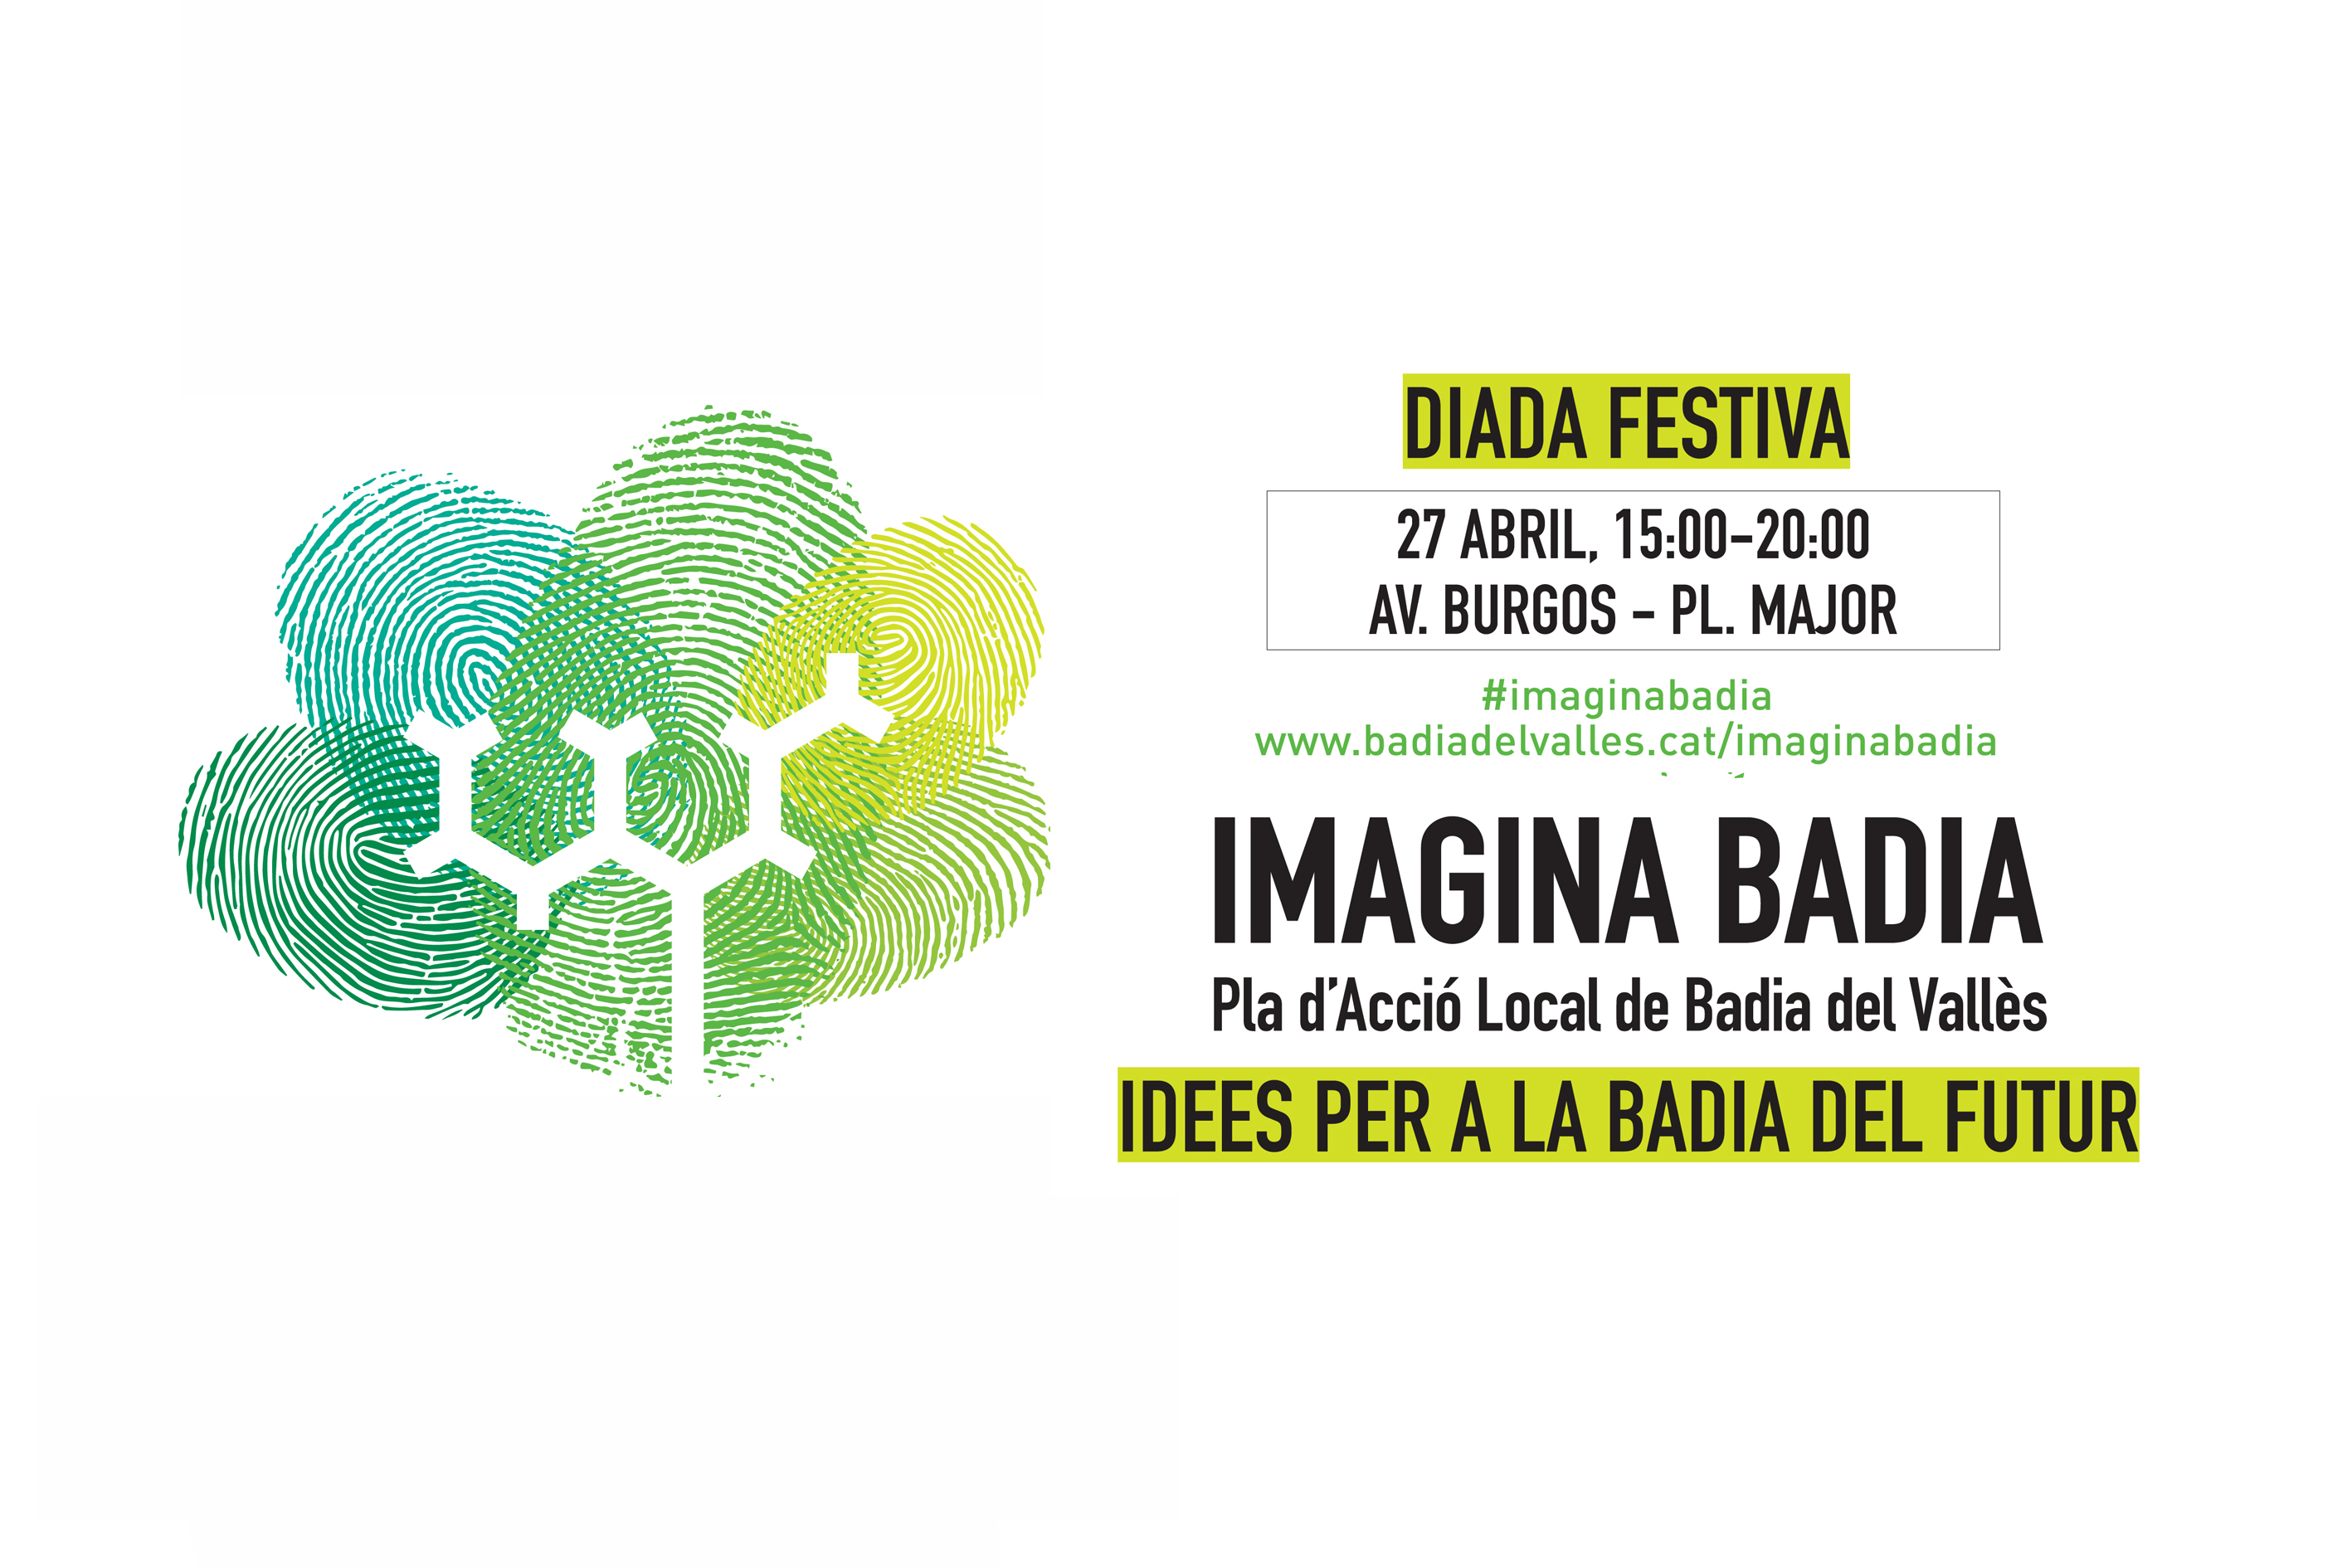 Imatge de la diada festiva Imagina Badia, el 27 d'abril